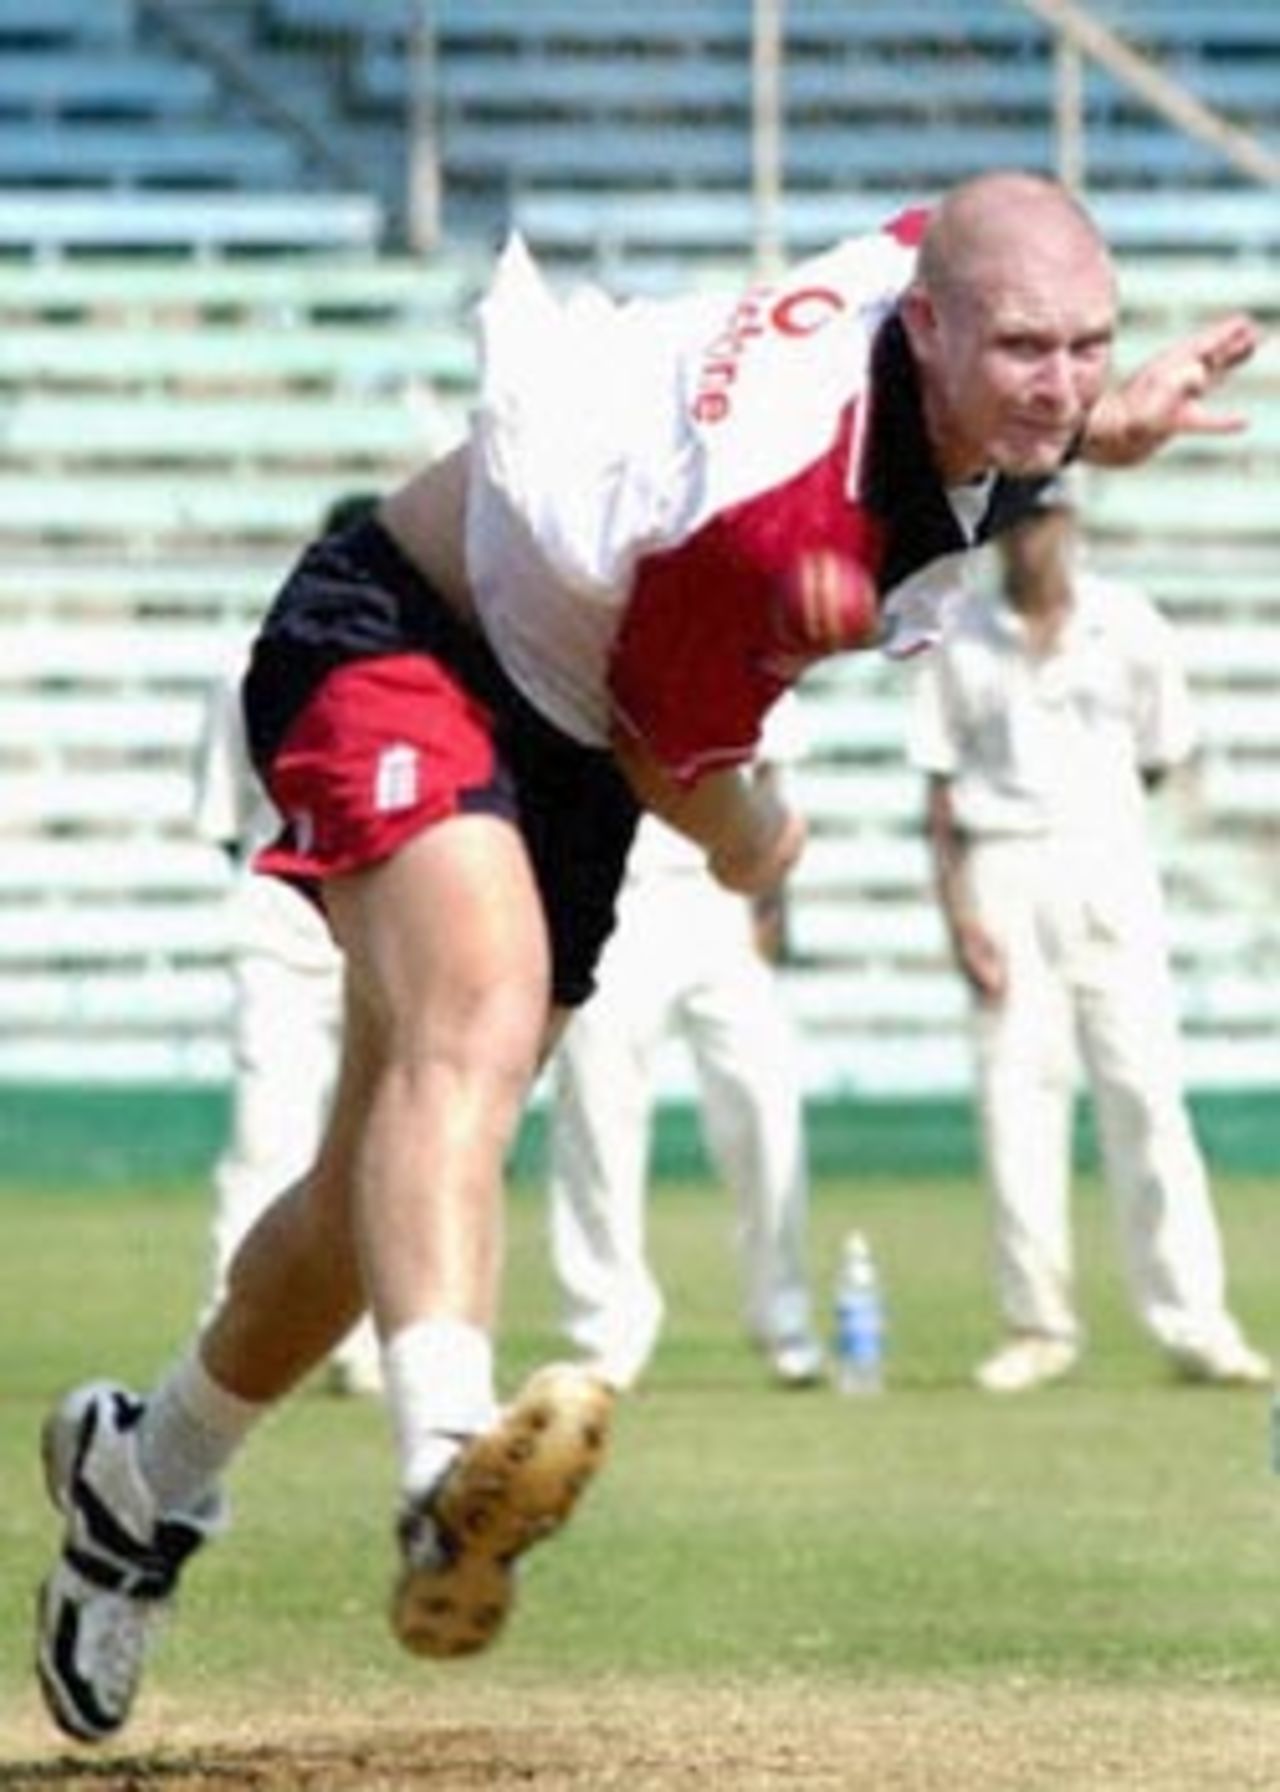 17 November 2001: England in India, 2001-02, Wankhede Stadium, Mumbai